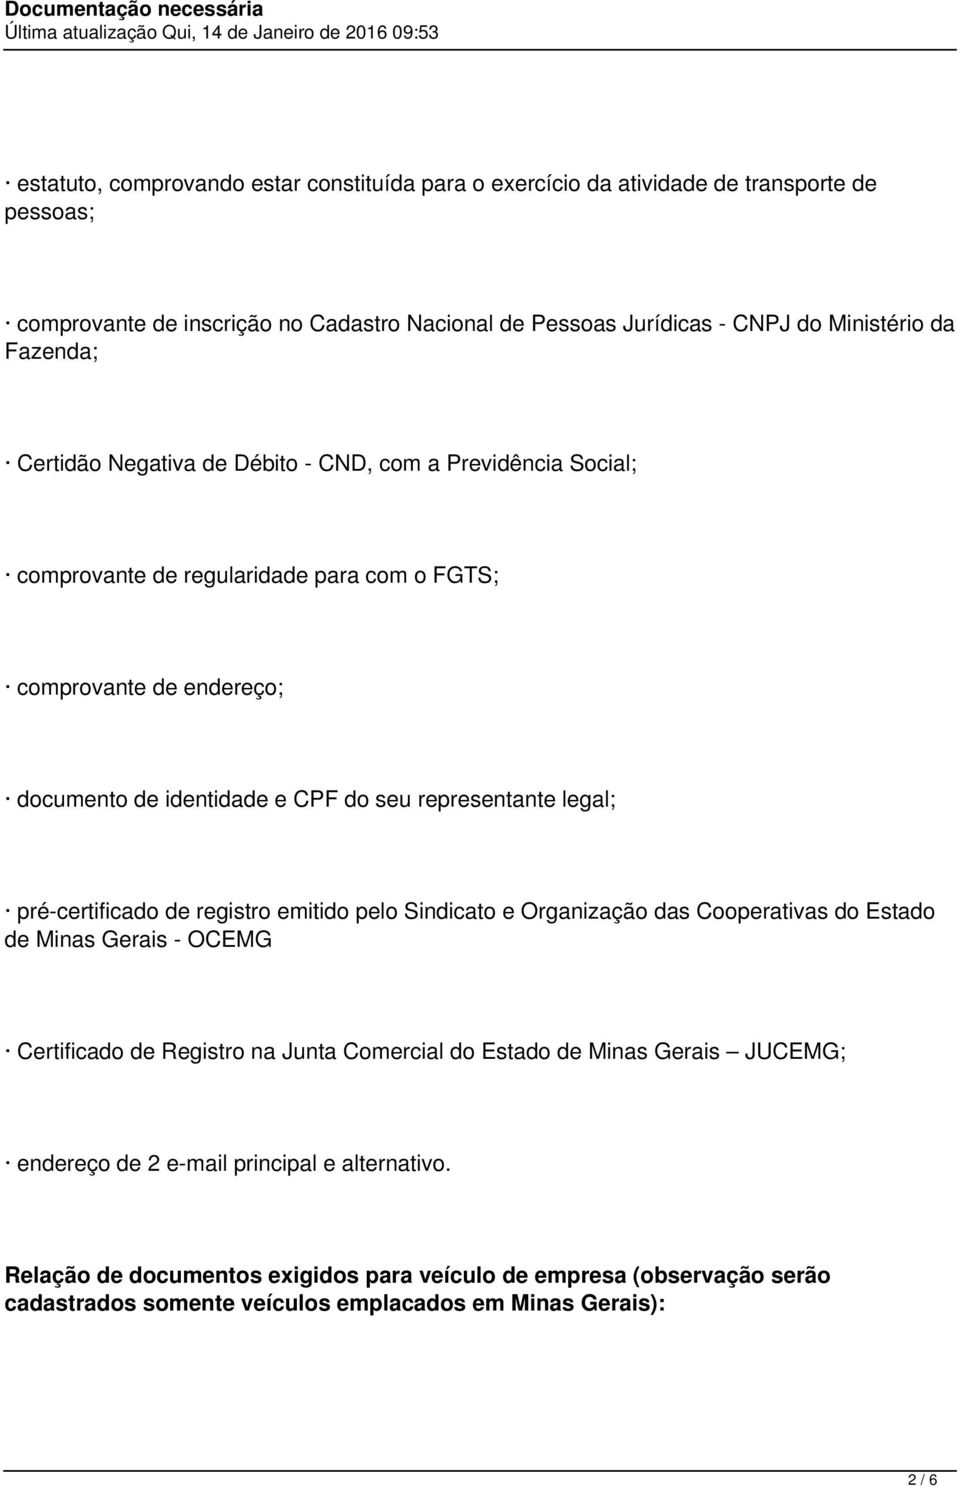 representante legal; pré-certificado de registro emitido pelo Sindicato e Organização das Cooperativas do Estado de Minas Gerais - OCEMG Certificado de Registro na Junta Comercial do Estado